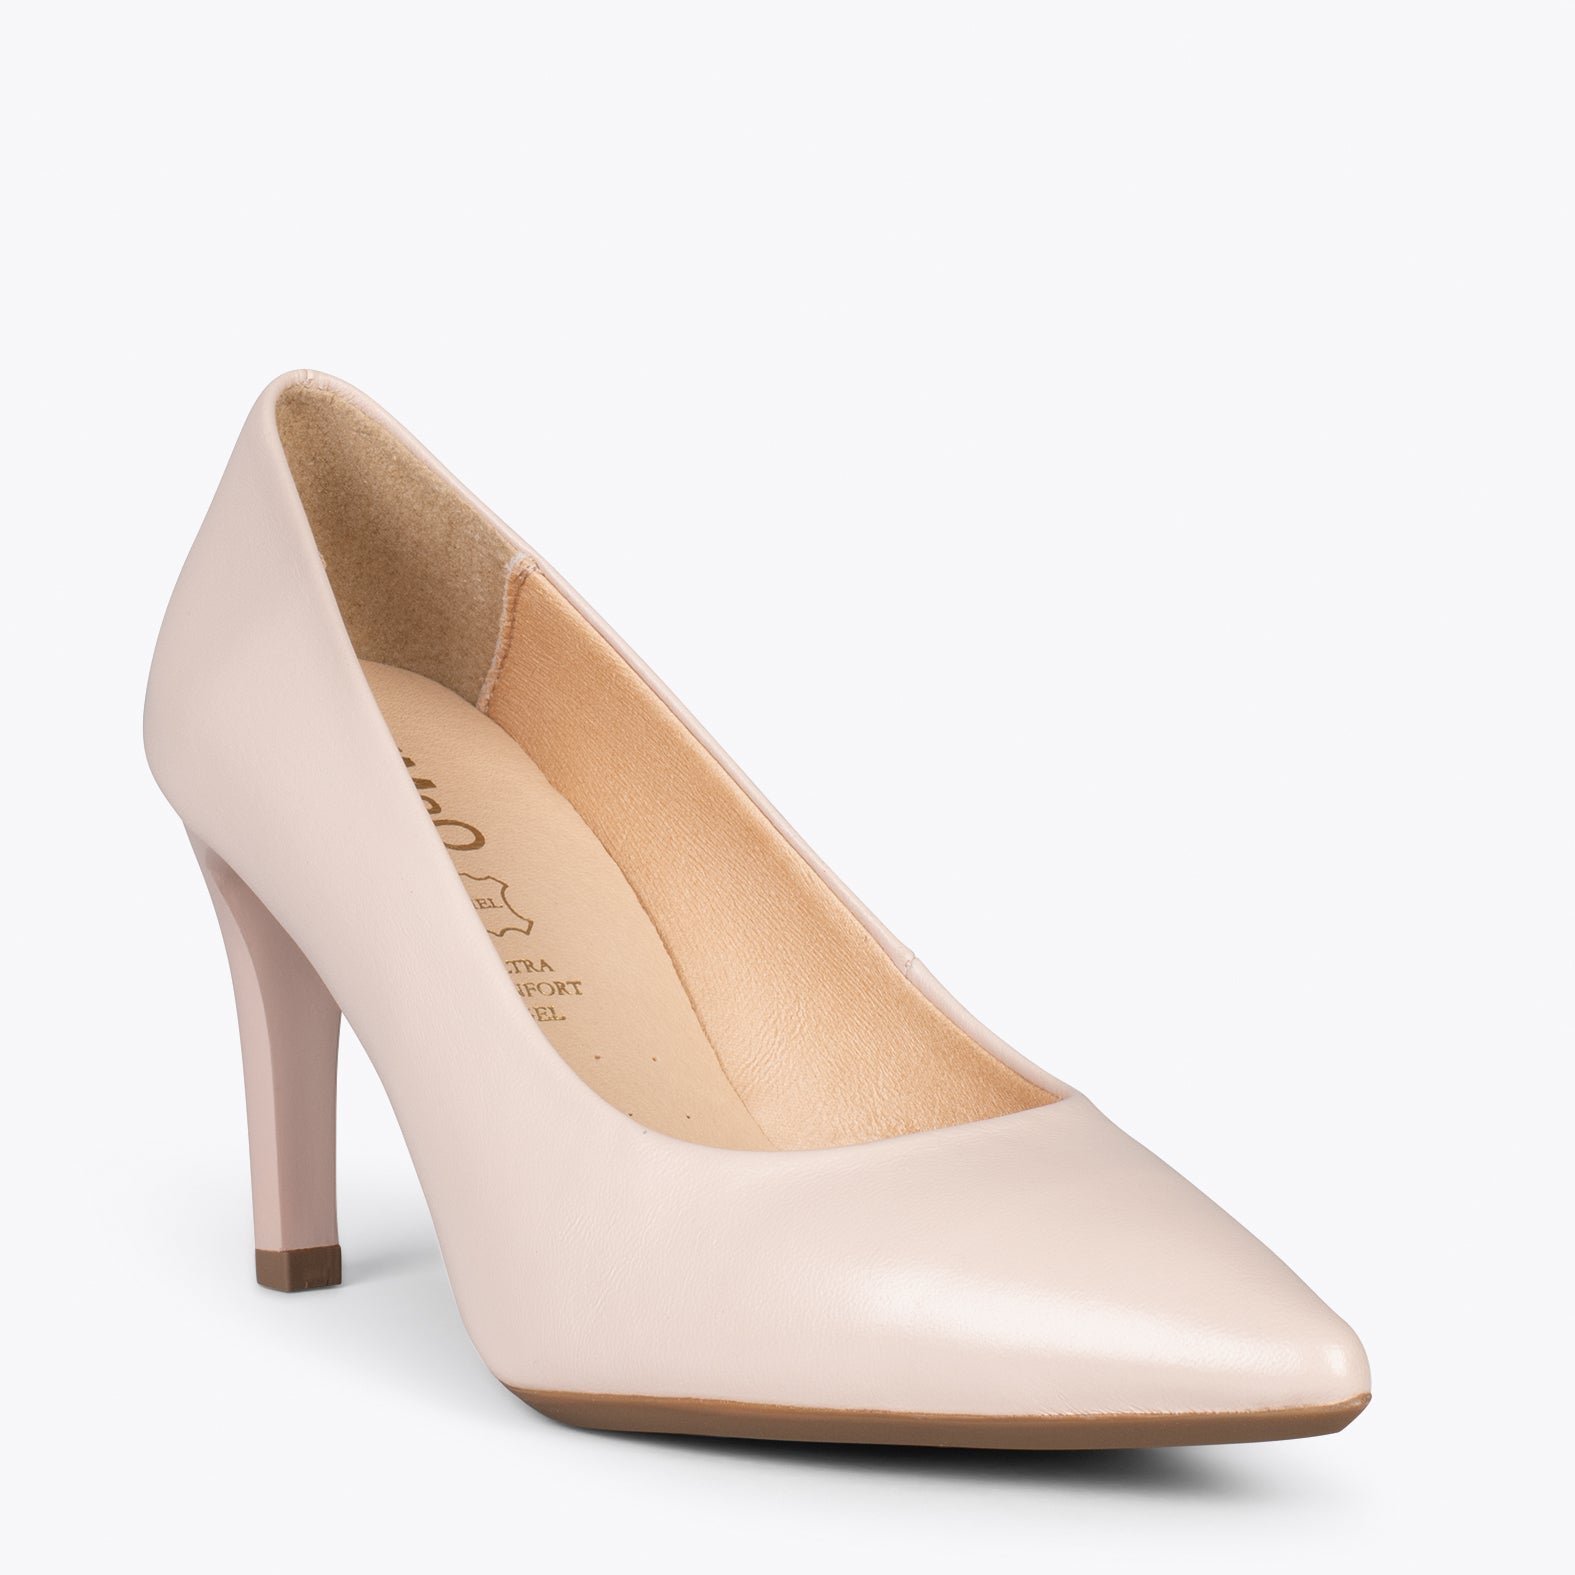 GLAM – NUDE elegant high heels